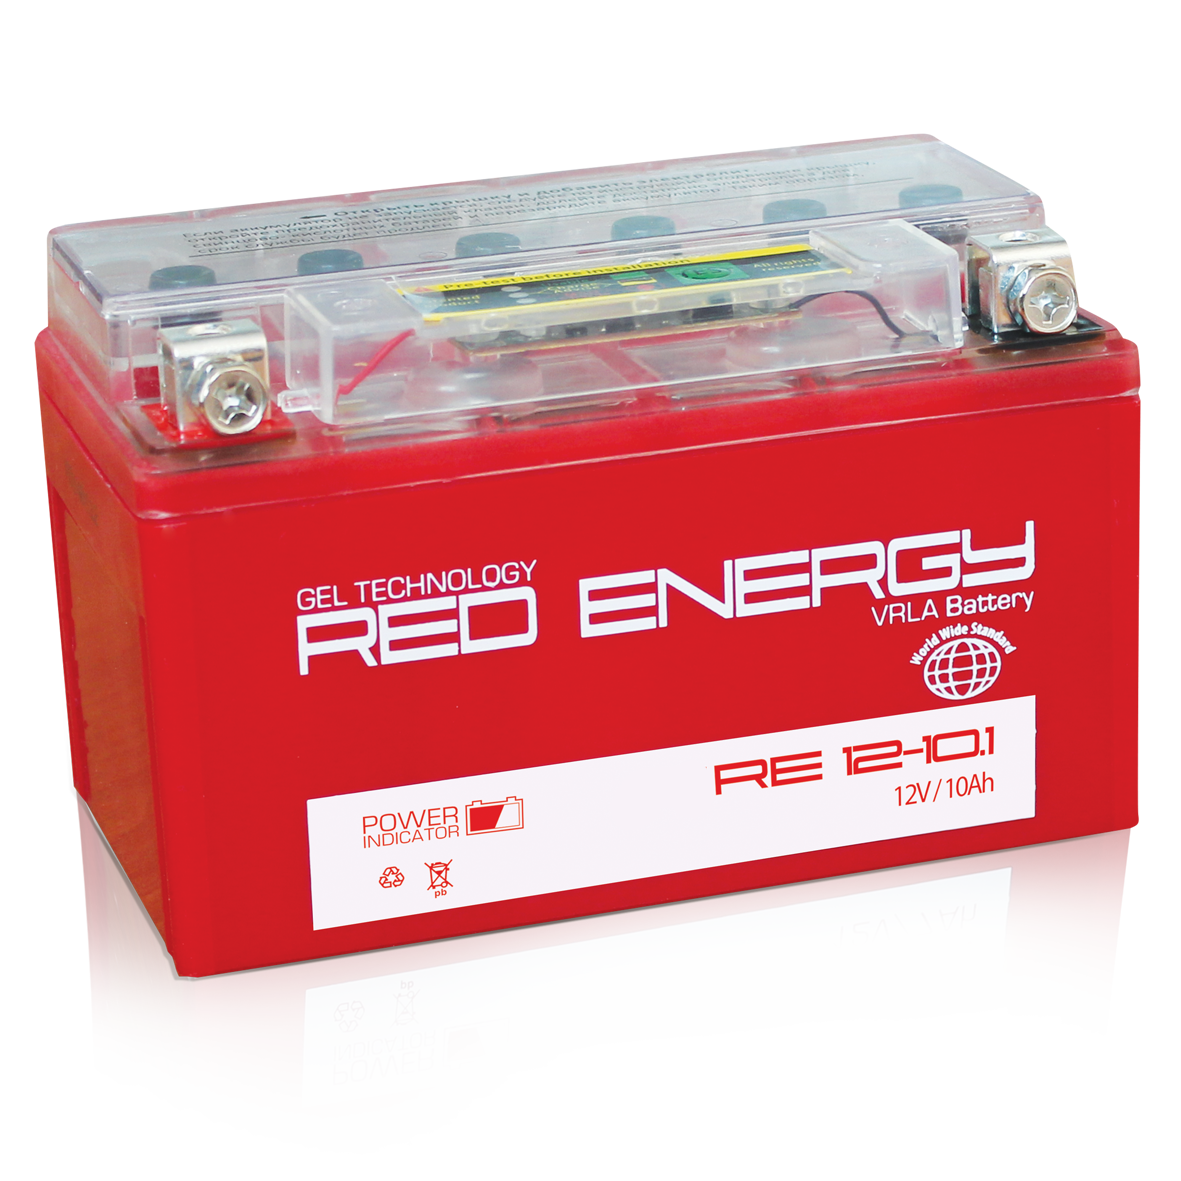 В ассортименте ЭТМ появились аккумуляторы Red Energy компании Delta MOTO для мототехники.